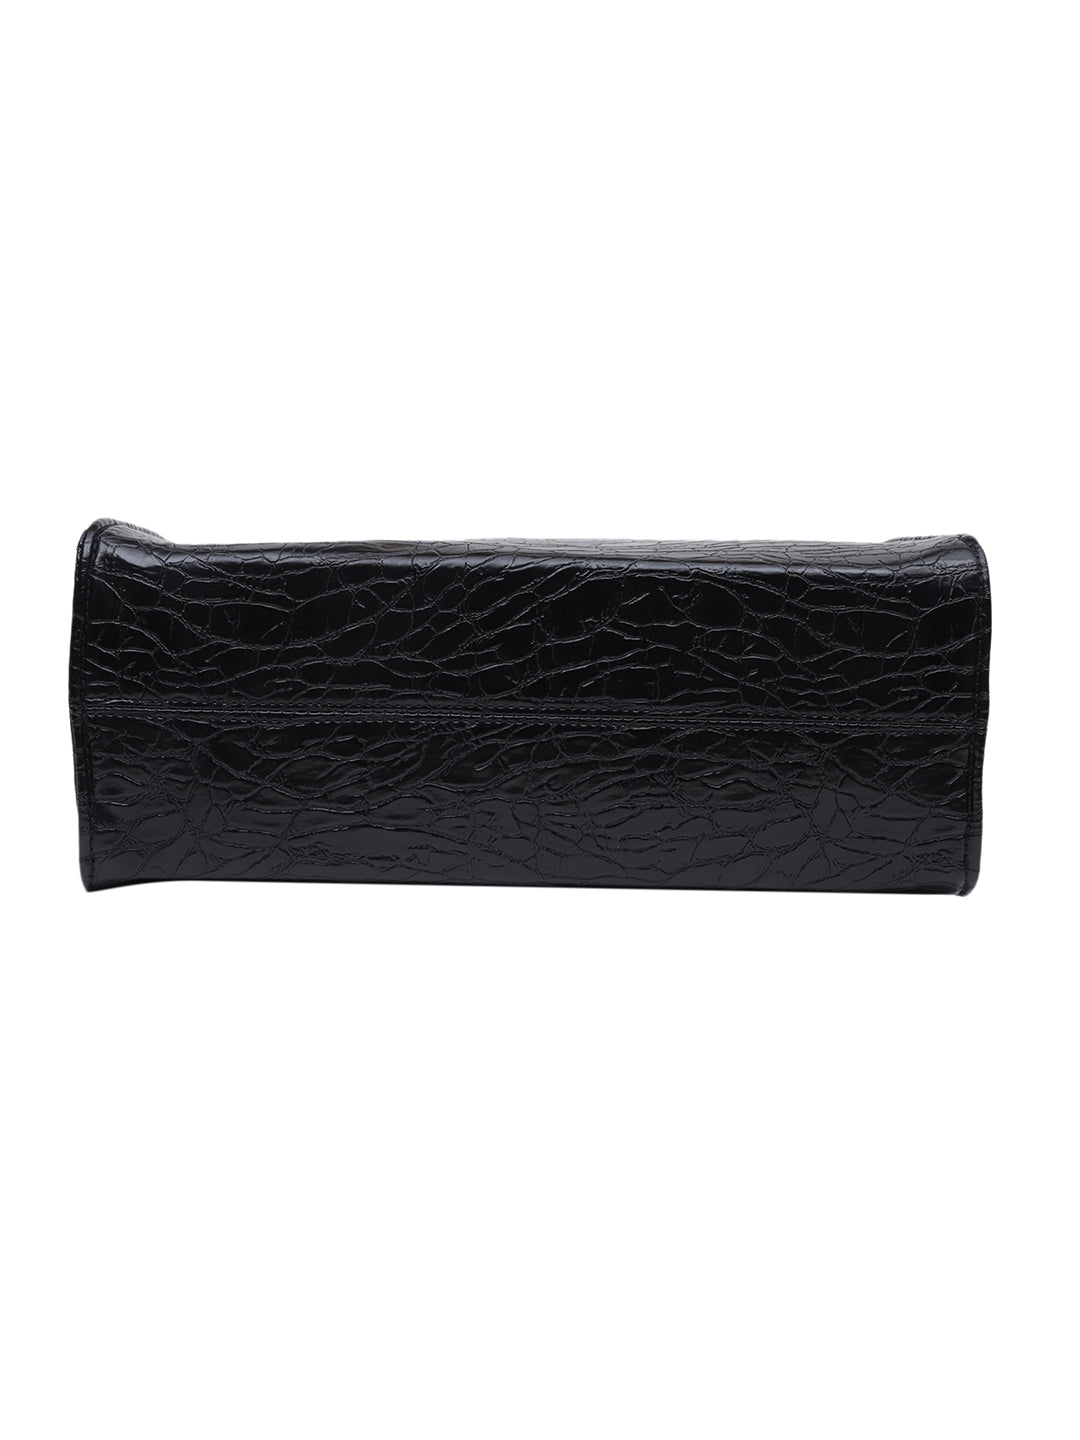 MINI WESST KAREN BAG Black Casual Textured Tote Bag(MWTB082BL)